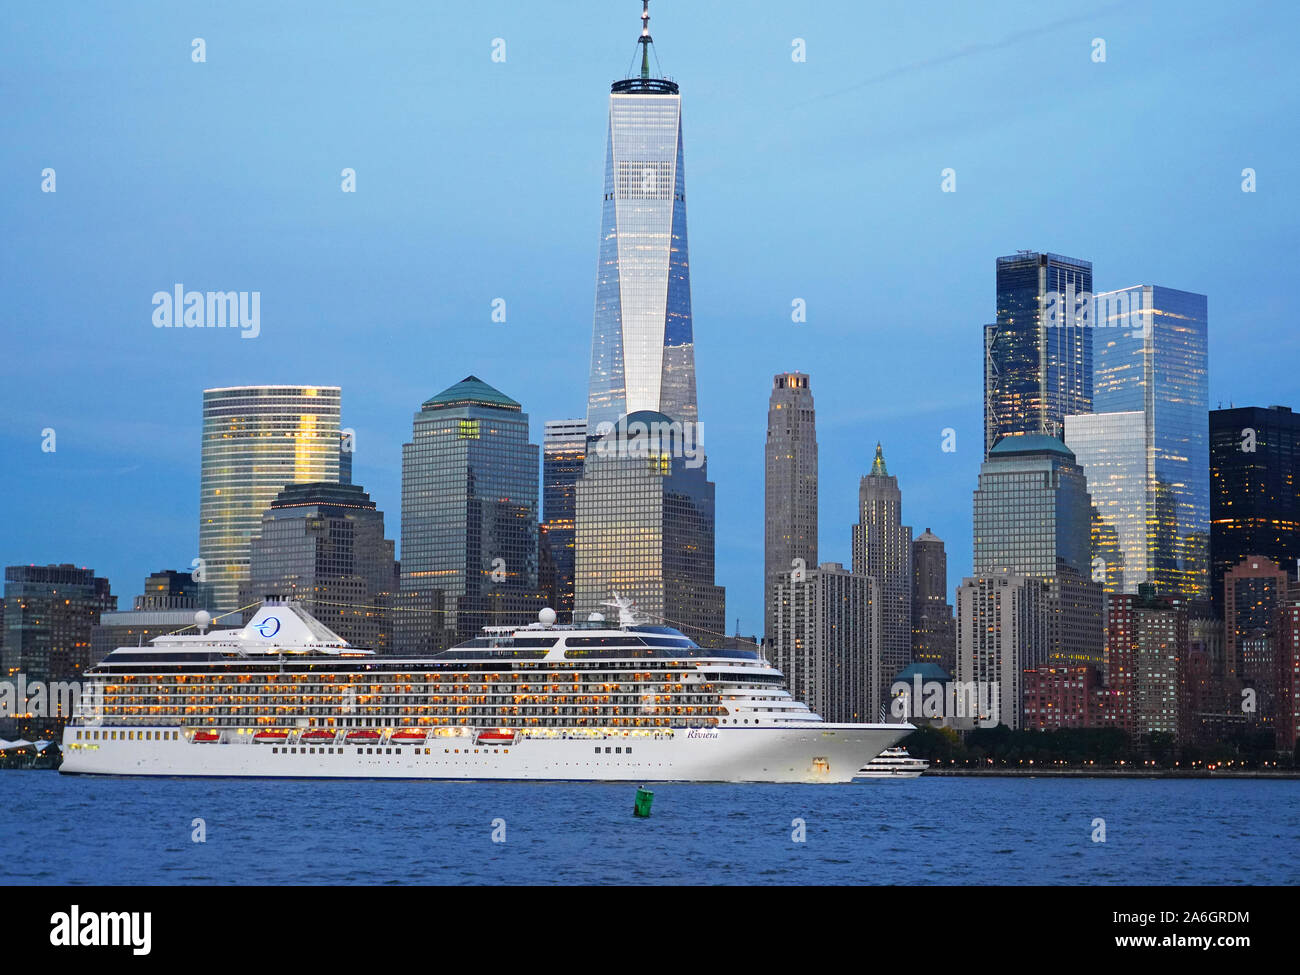 Oceania Cruises Riviera en el puerto de Nueva York, pasando por perfil de Manhattan con One World Trade Center, también conocido como 'Torre de la Libertad". Foto de stock